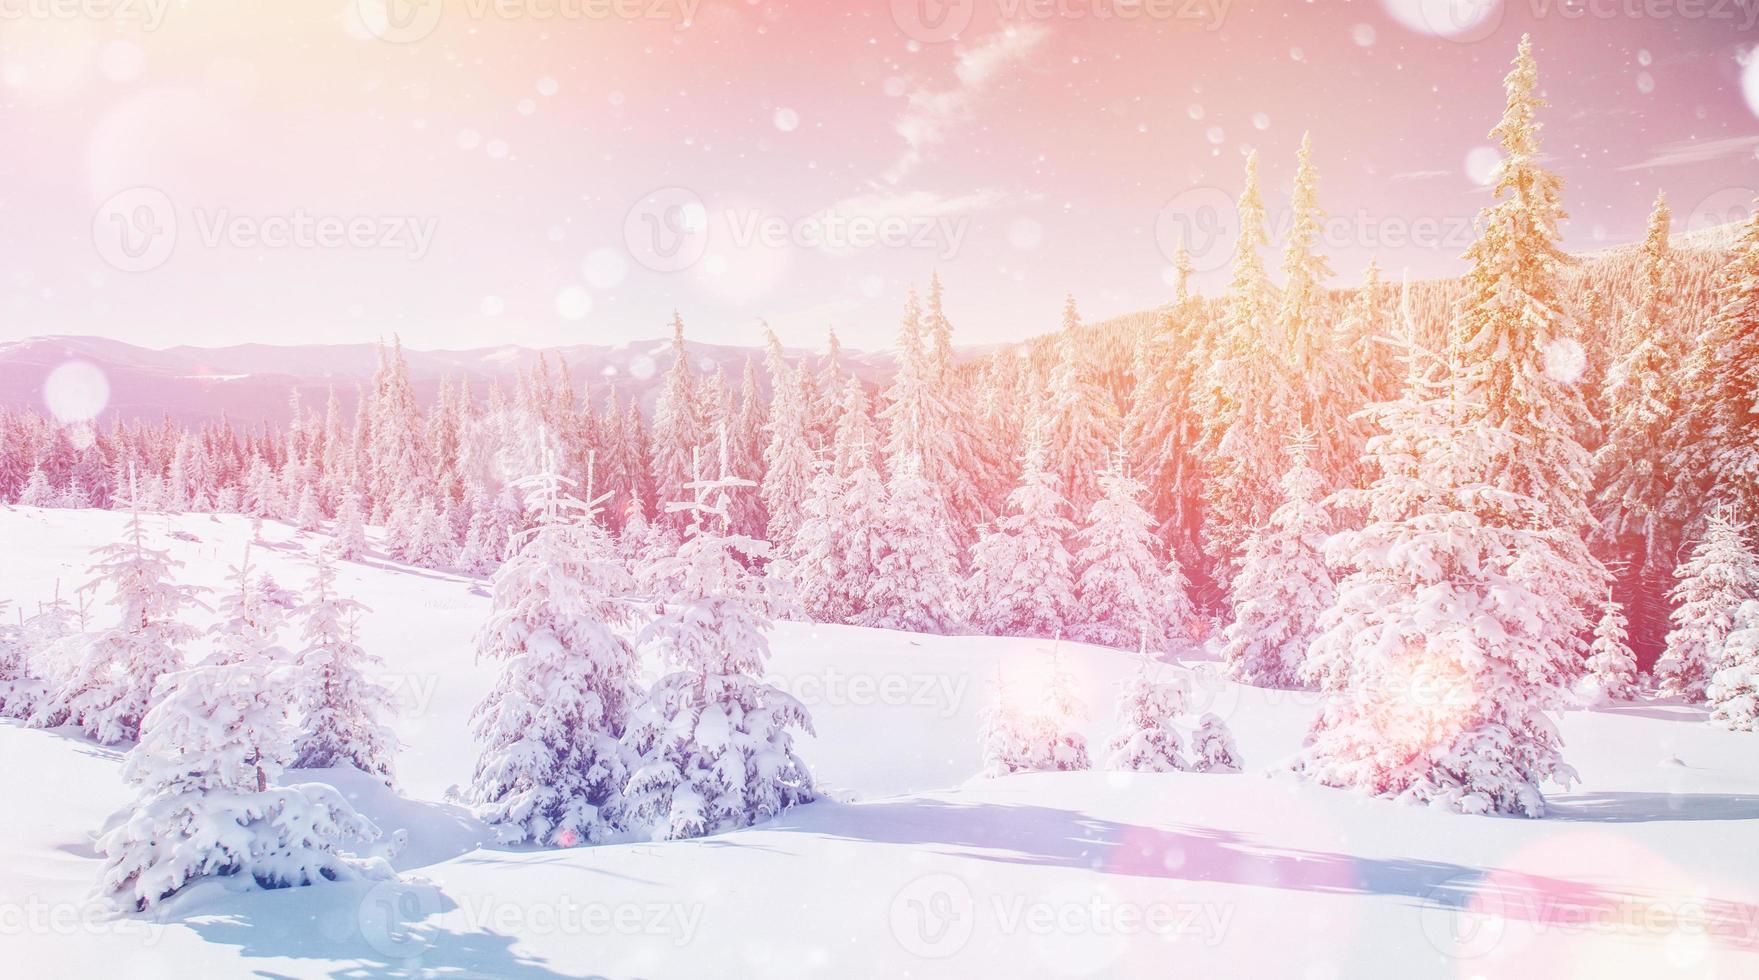 vinterlandskapsträd i rimfrost, bakgrund med något mjukt h foto